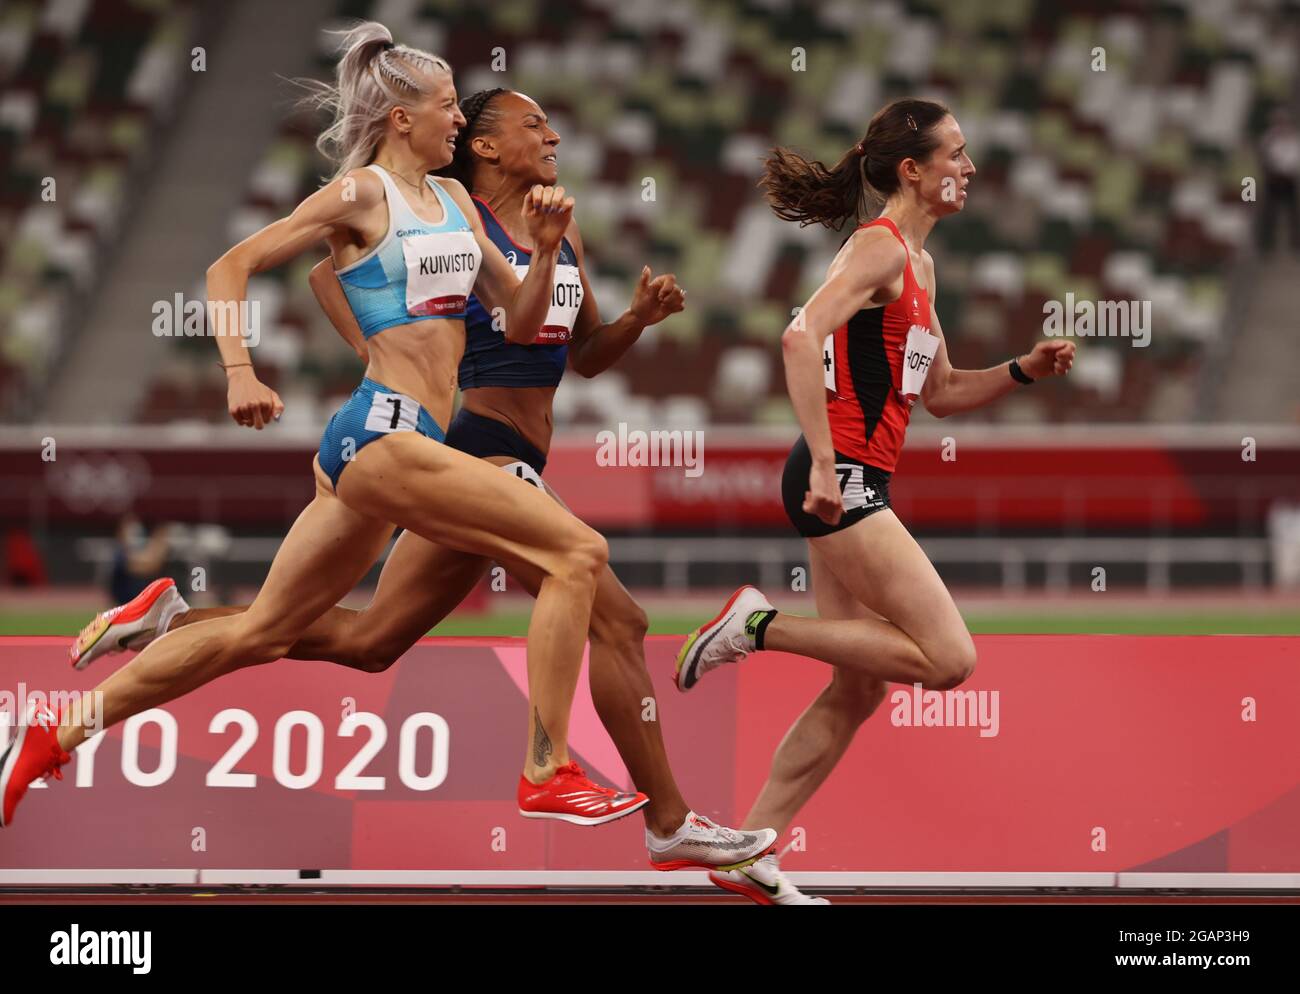 Tokyo, Giappone. 31 luglio 2021. LINEA FINN-ISH: Finale olimpica femminile di 800 metri, il finlandese SARA KUIVISTO, 29, (numero bib 1894) in via di nuovo rompendo il suo ultimo calore per fare le semifinali alle Olimpiadi estive di Tokyo 2020, sabato. Finendo 6° mentre si è infranto un record di 30 anni per le donne finlandesi nei 800 metri, si è registrato un nuovo record finlandese di 1.59.41 nelle semifinali di 800 metri delle Olimpiadi di Tokyo. Questa è la prima volta che una donna finlandese ha percorso 800 metri in meno di due minuti. (Credit ALL Usages: © Scott Mc Kiernan/ZUMA Press Wire) Foto Stock